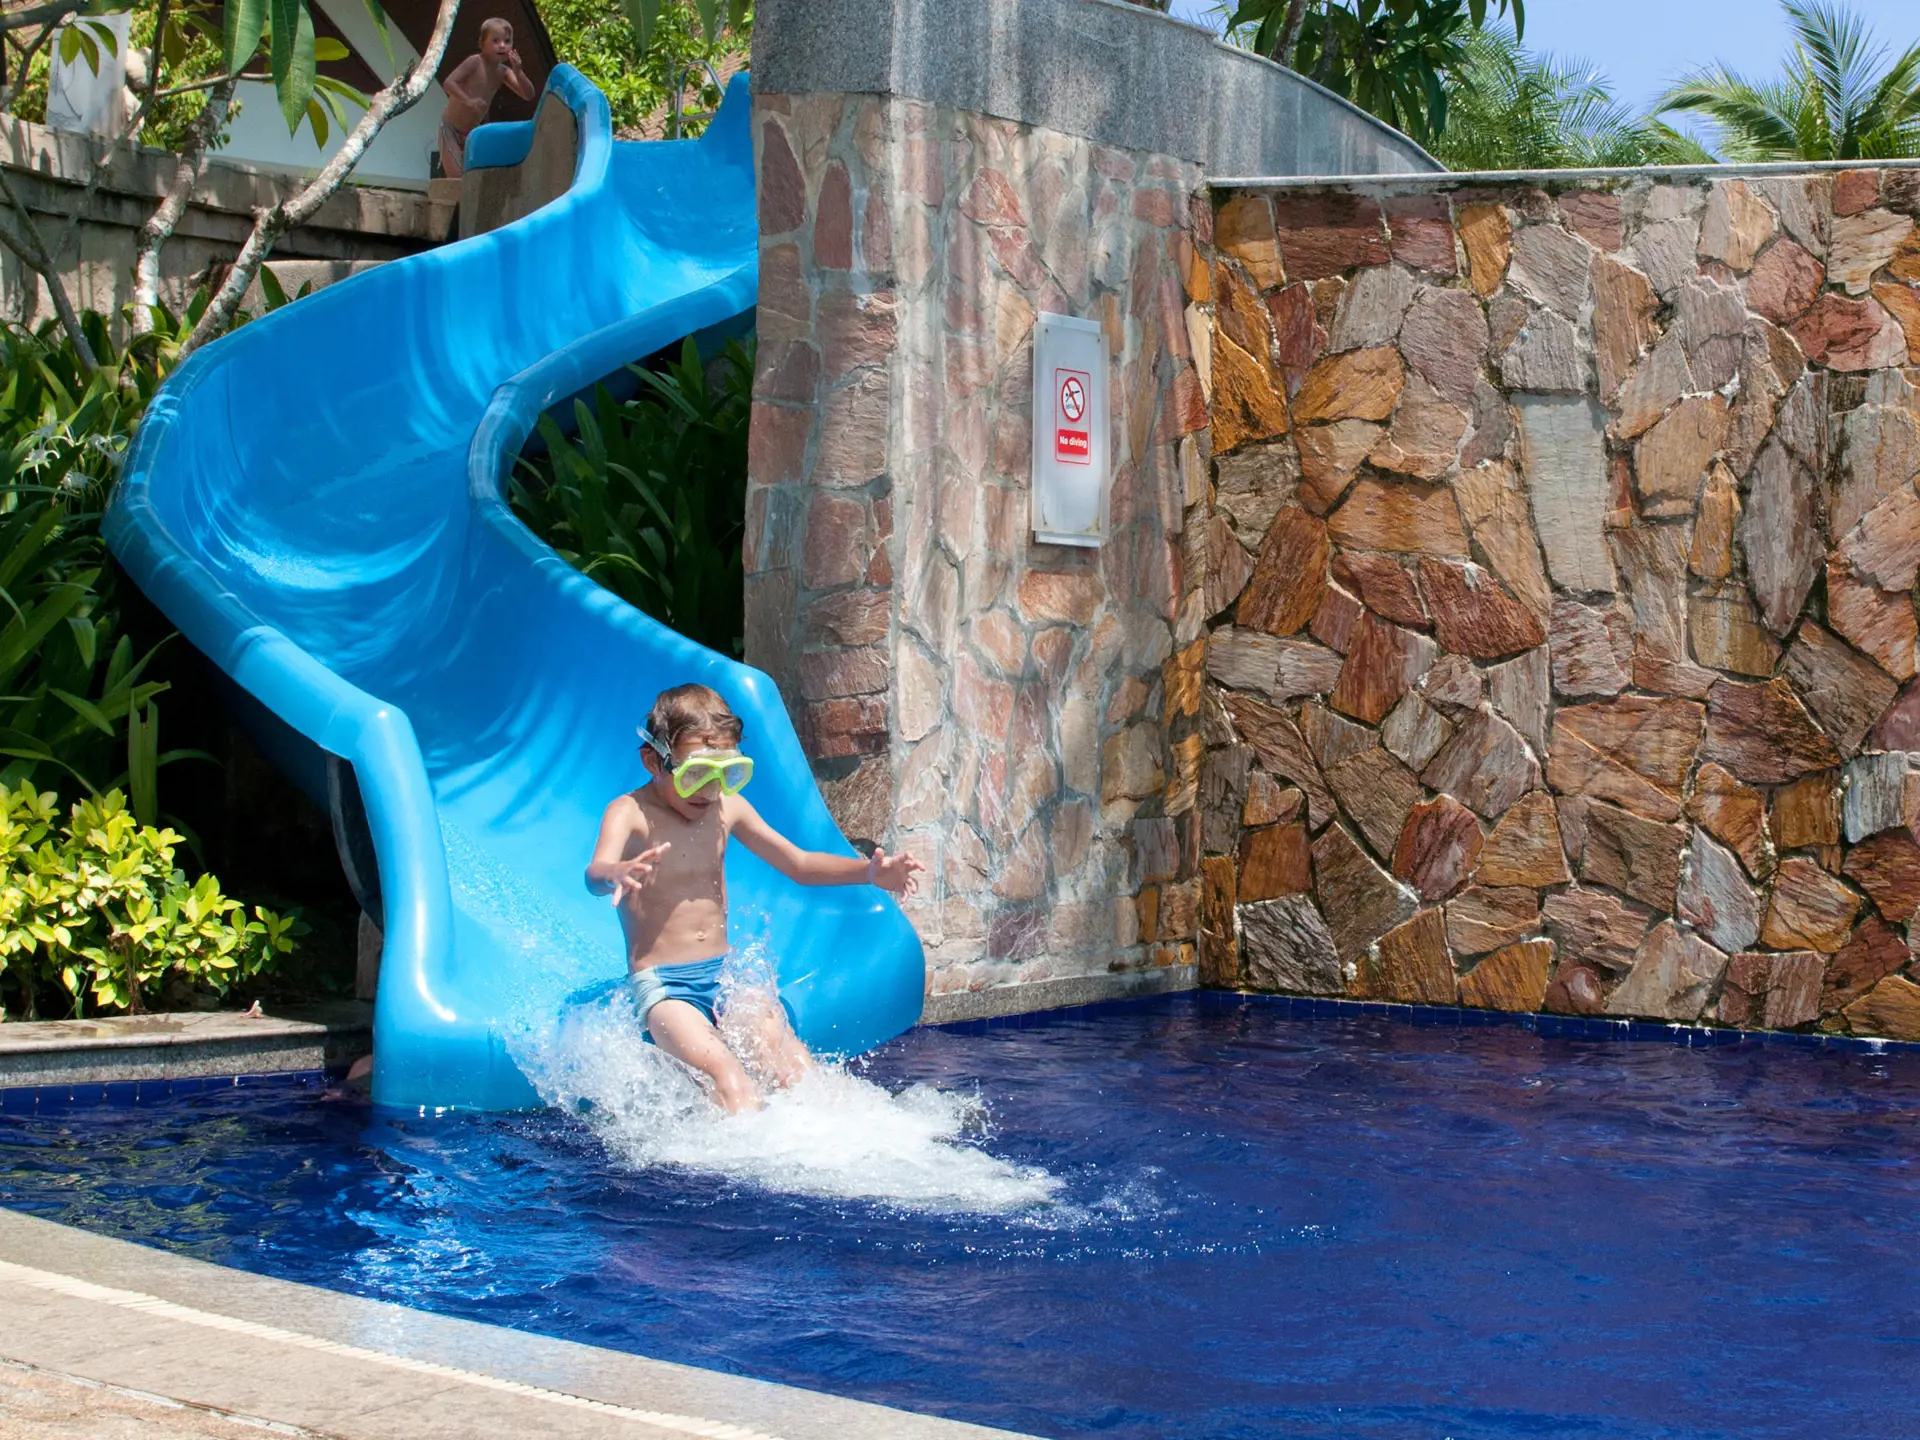 Kids' pool with water slide.jpg